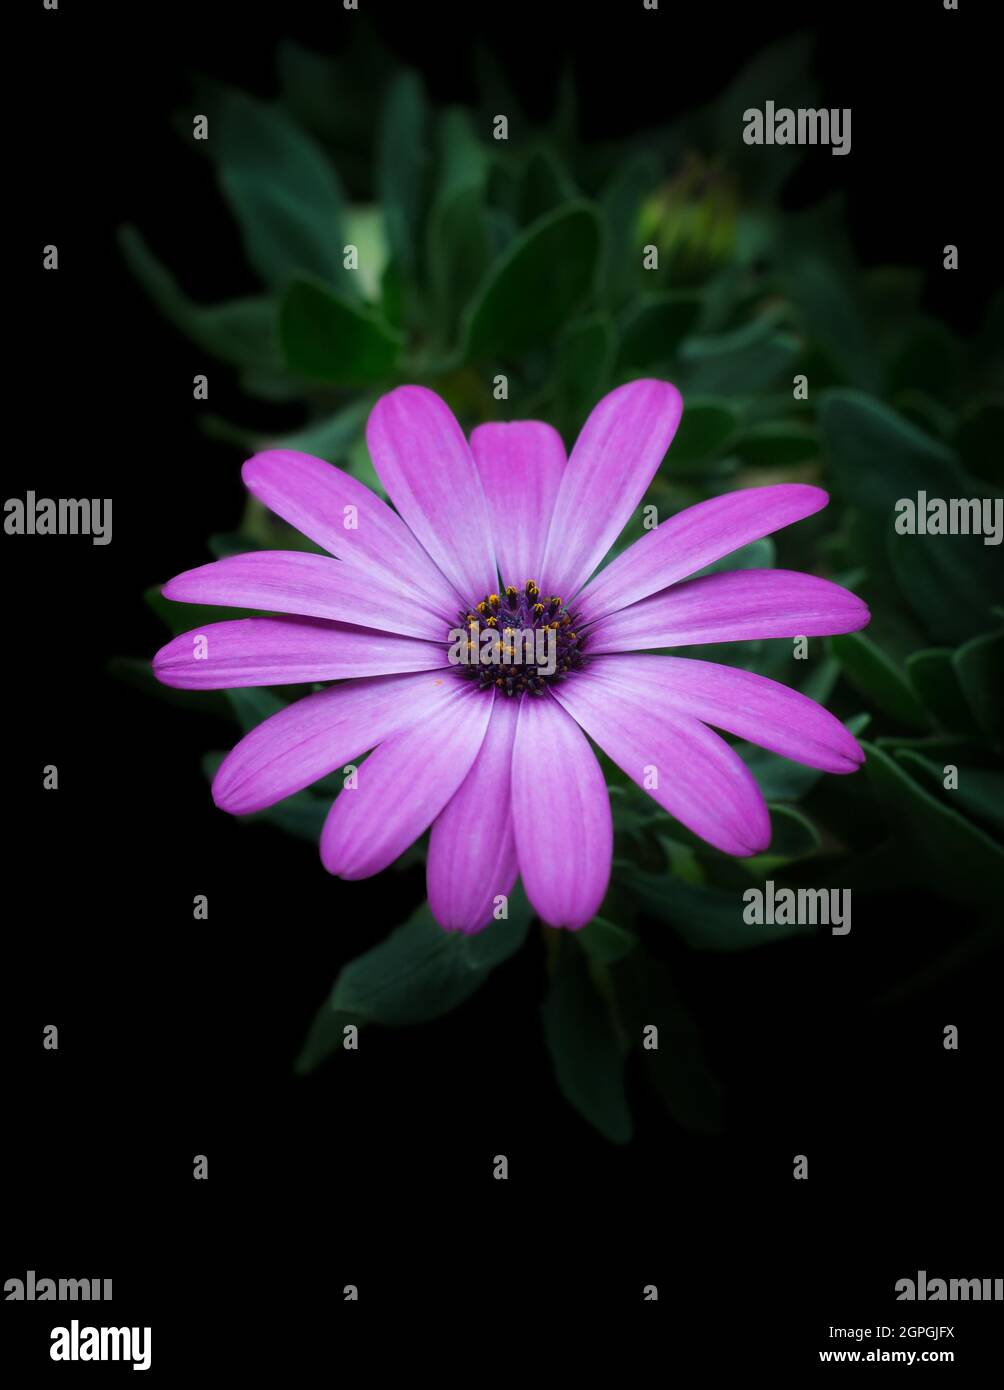 osteospermum, rosa, violette afrikanische Gänseblümchen, auch Blauäugige Gänseblümchen oder Umhang-Gänseblümchen genannt, wächst im kühlen Sommerklima, isoliert auf schwarzem Hintergrund Stockfoto